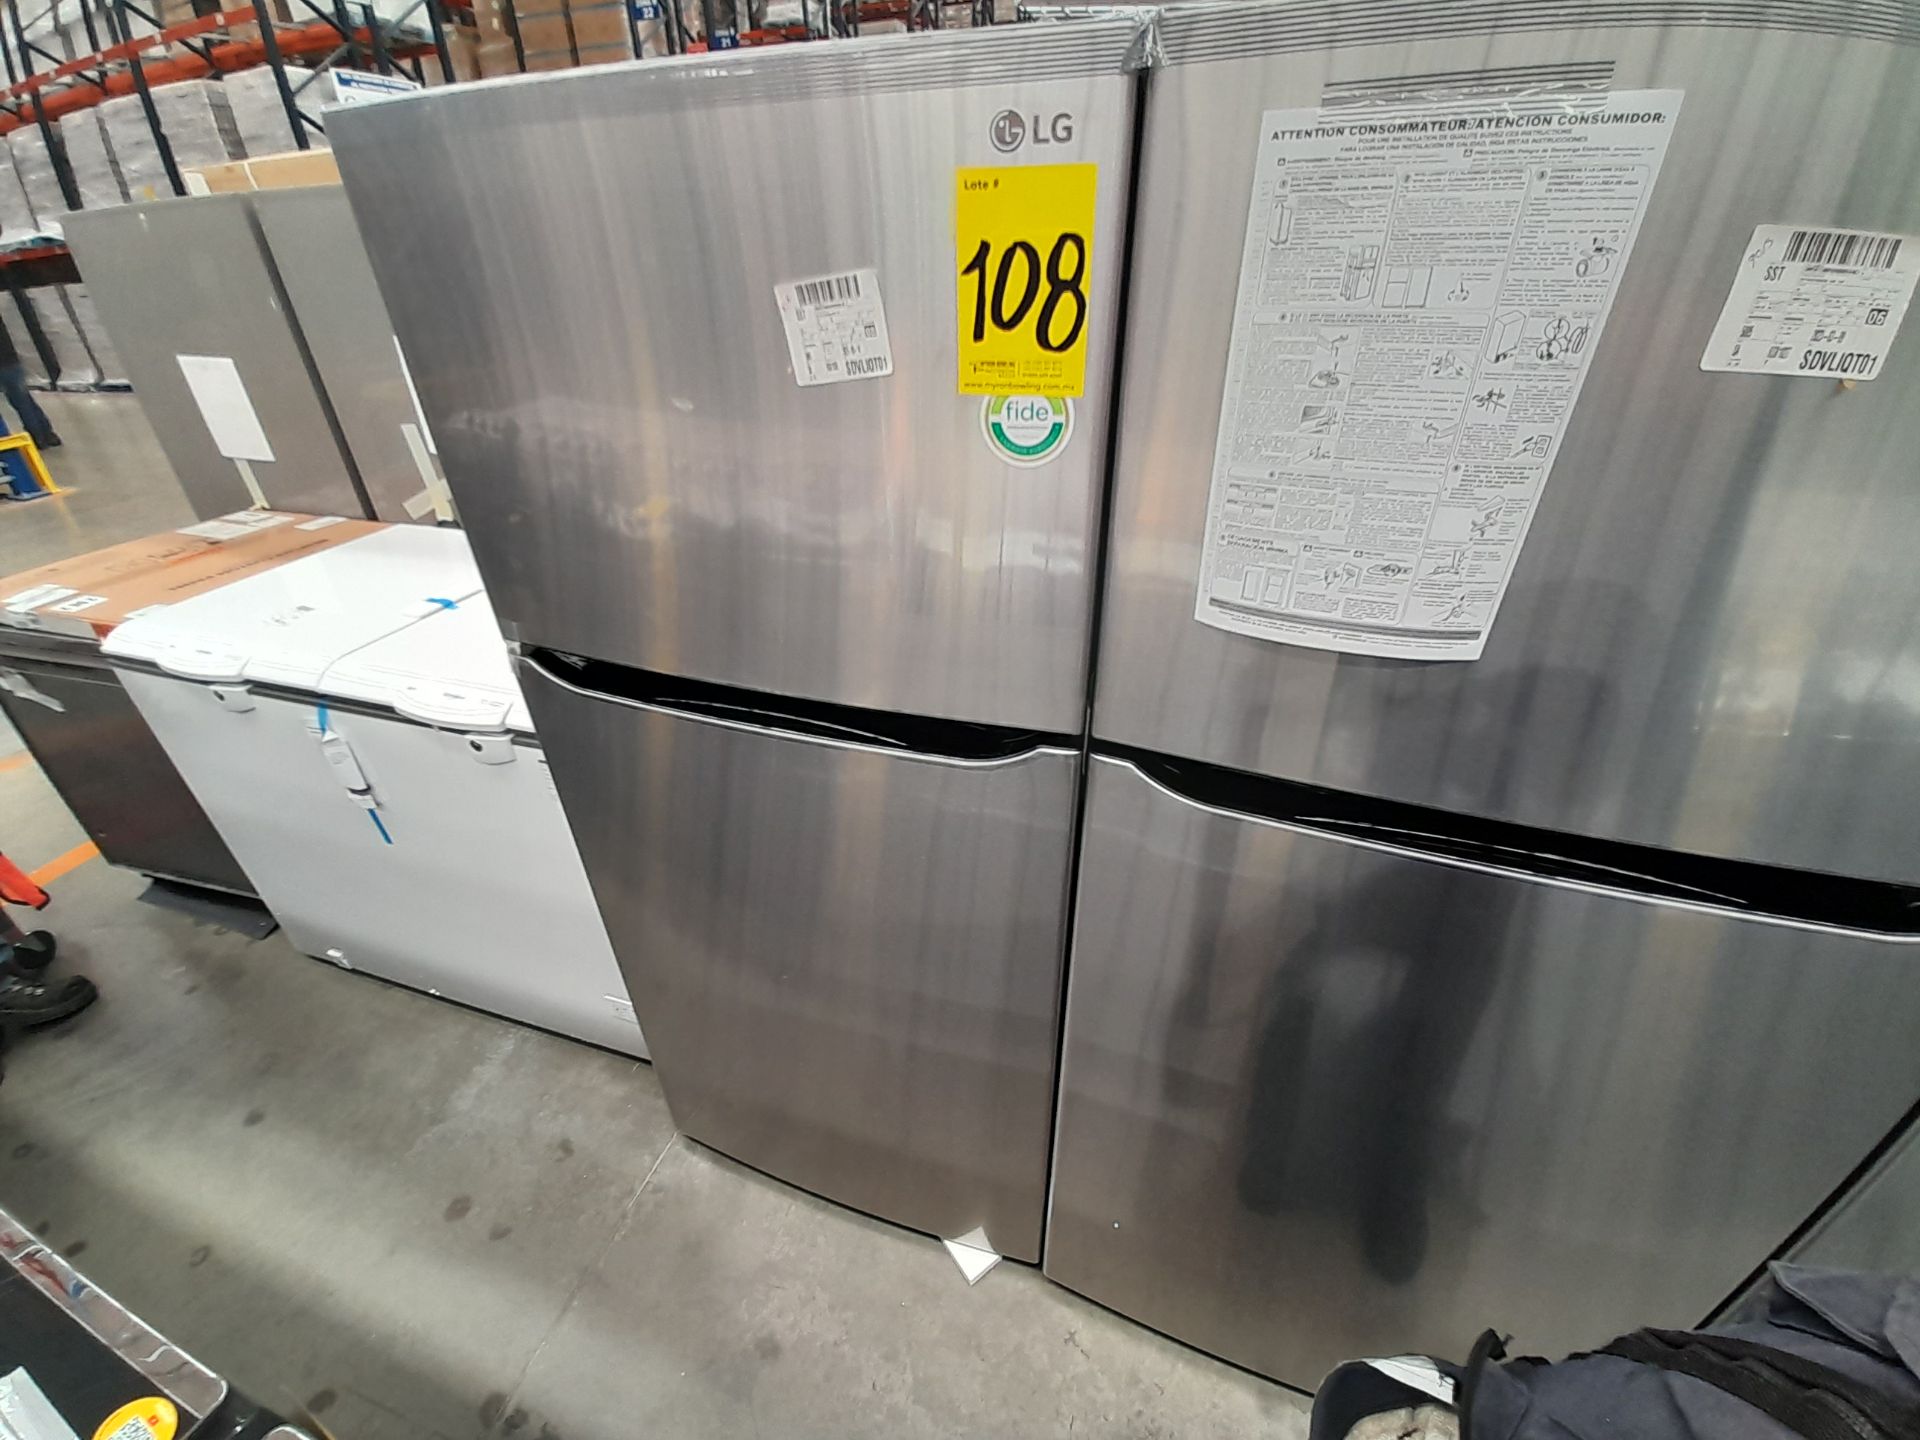 (Nuevo) Lote de 1 Refrigerador sin Dispensador de Agua Marca LG, Modelo LT57BPSX, Serie 3G383, Colo - Image 3 of 6